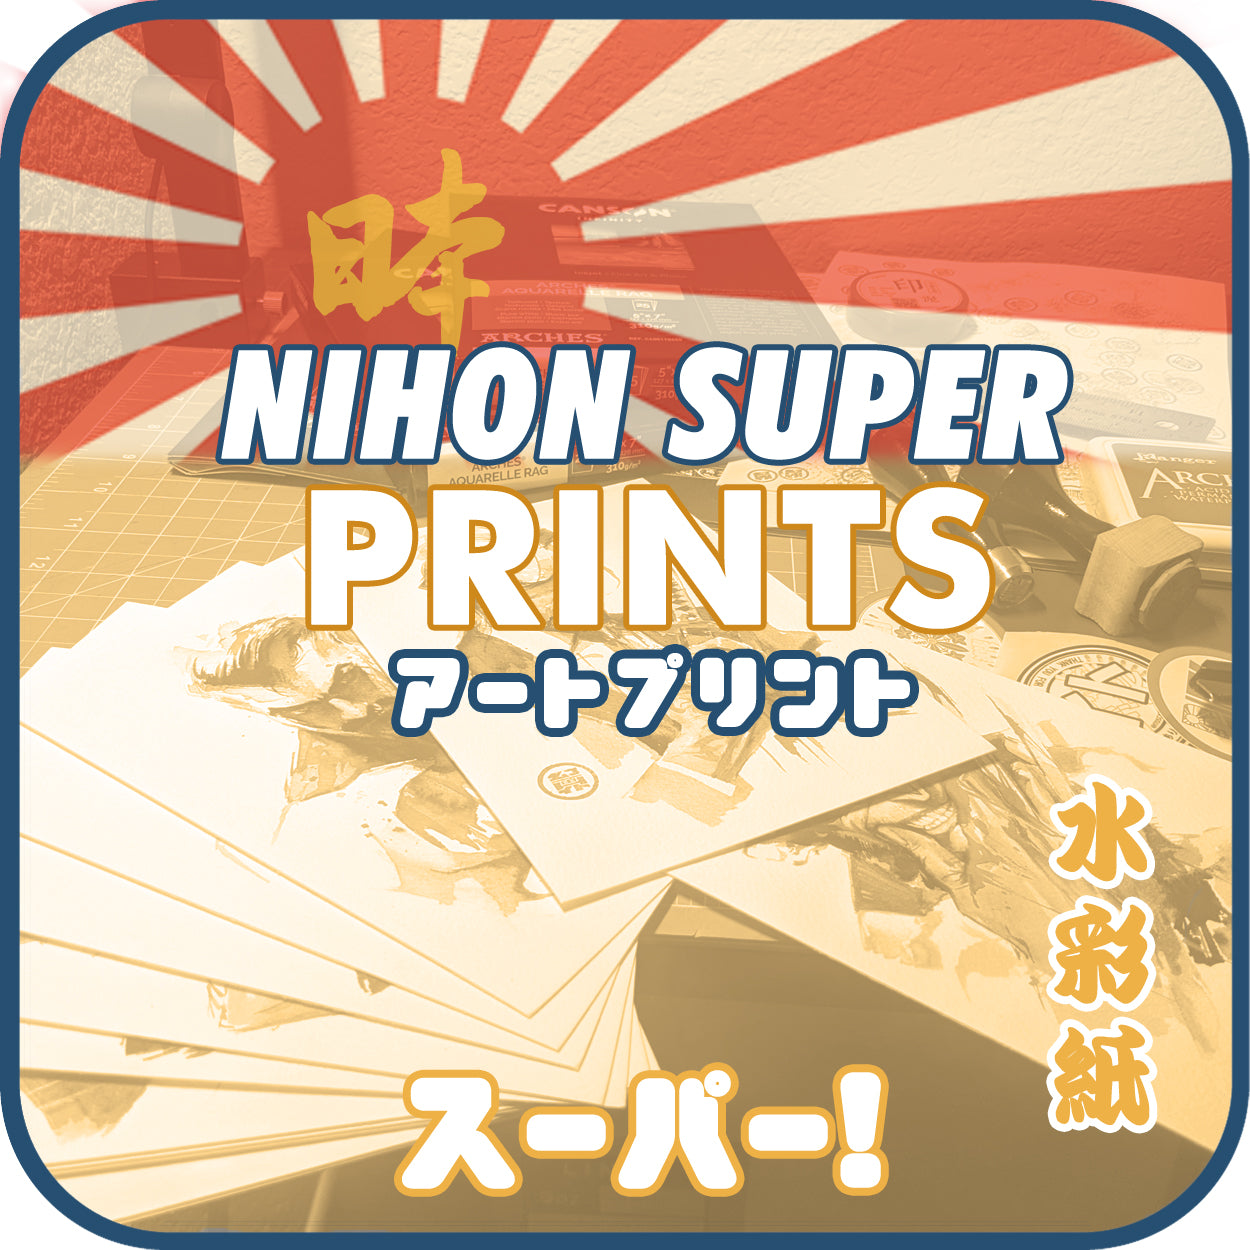 Prints (Nihon Series)